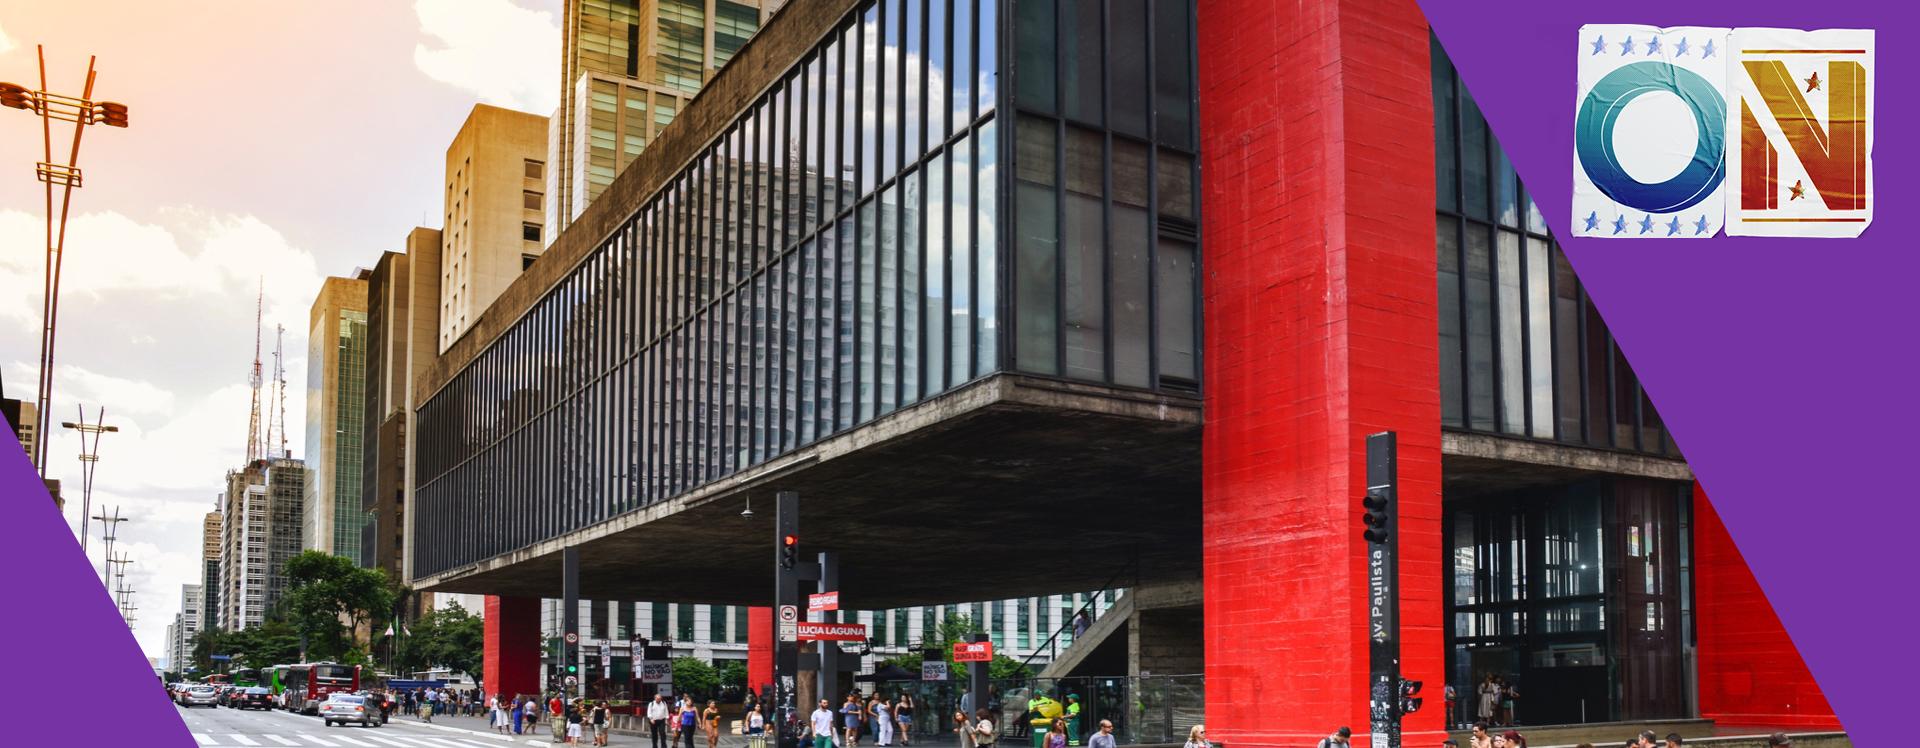 O guia cultural de São Paulo para o terceiro trimestre de 2019